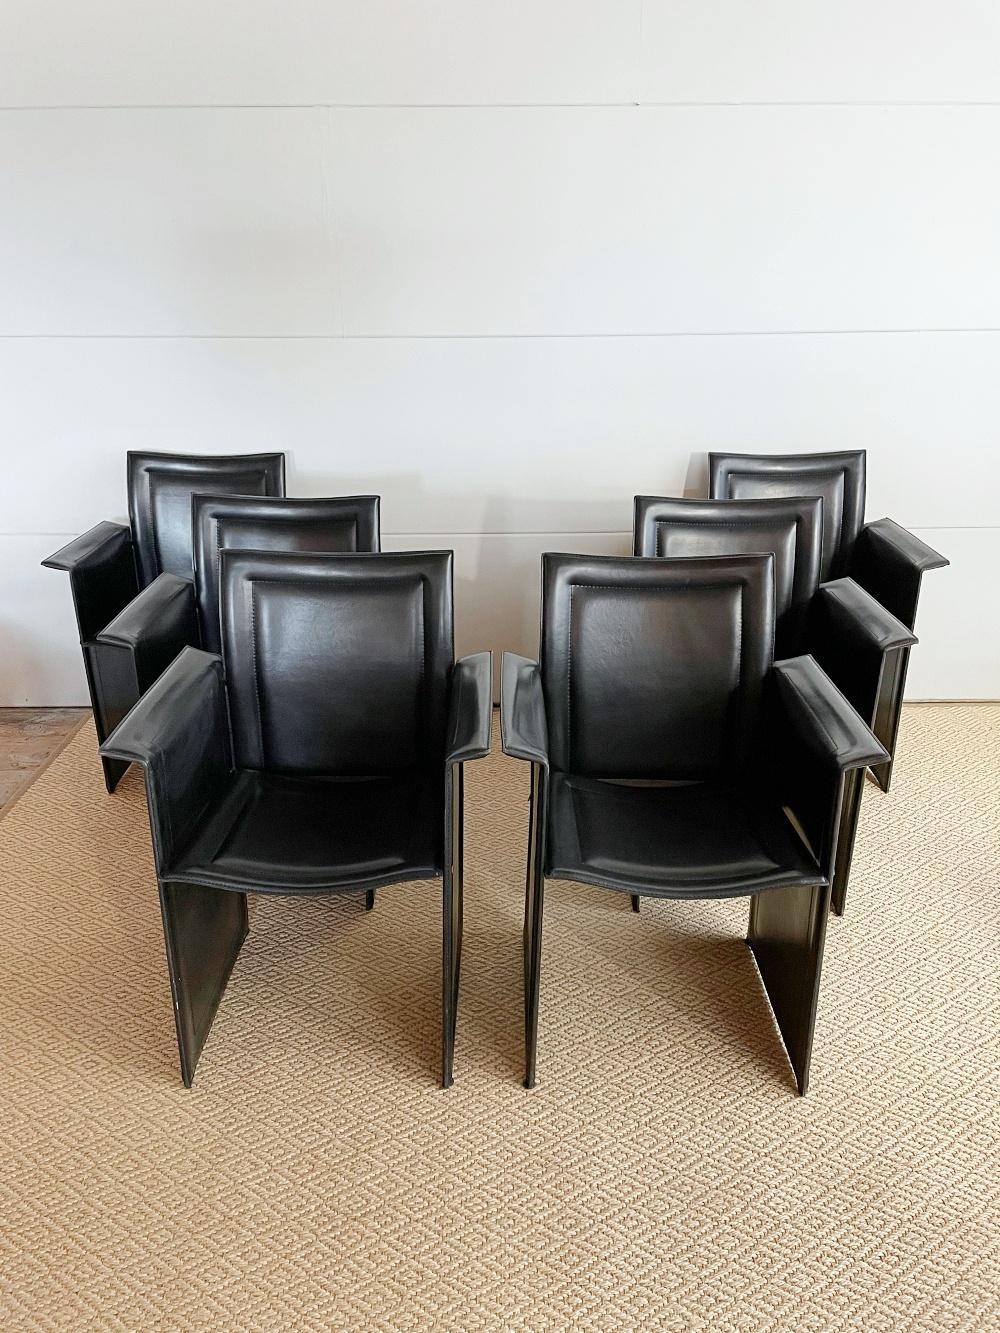 Ein Satz von sechs postmodernen skulpturalen Esszimmerstühlen, entworfen von Tito Agnoli und handgefertigt von Calligaris in Italien, 1980er Jahre. Sie bestehen aus einer Metallkonstruktion, die mit dickem schwarzem Leder überzogen ist. Die Stühle